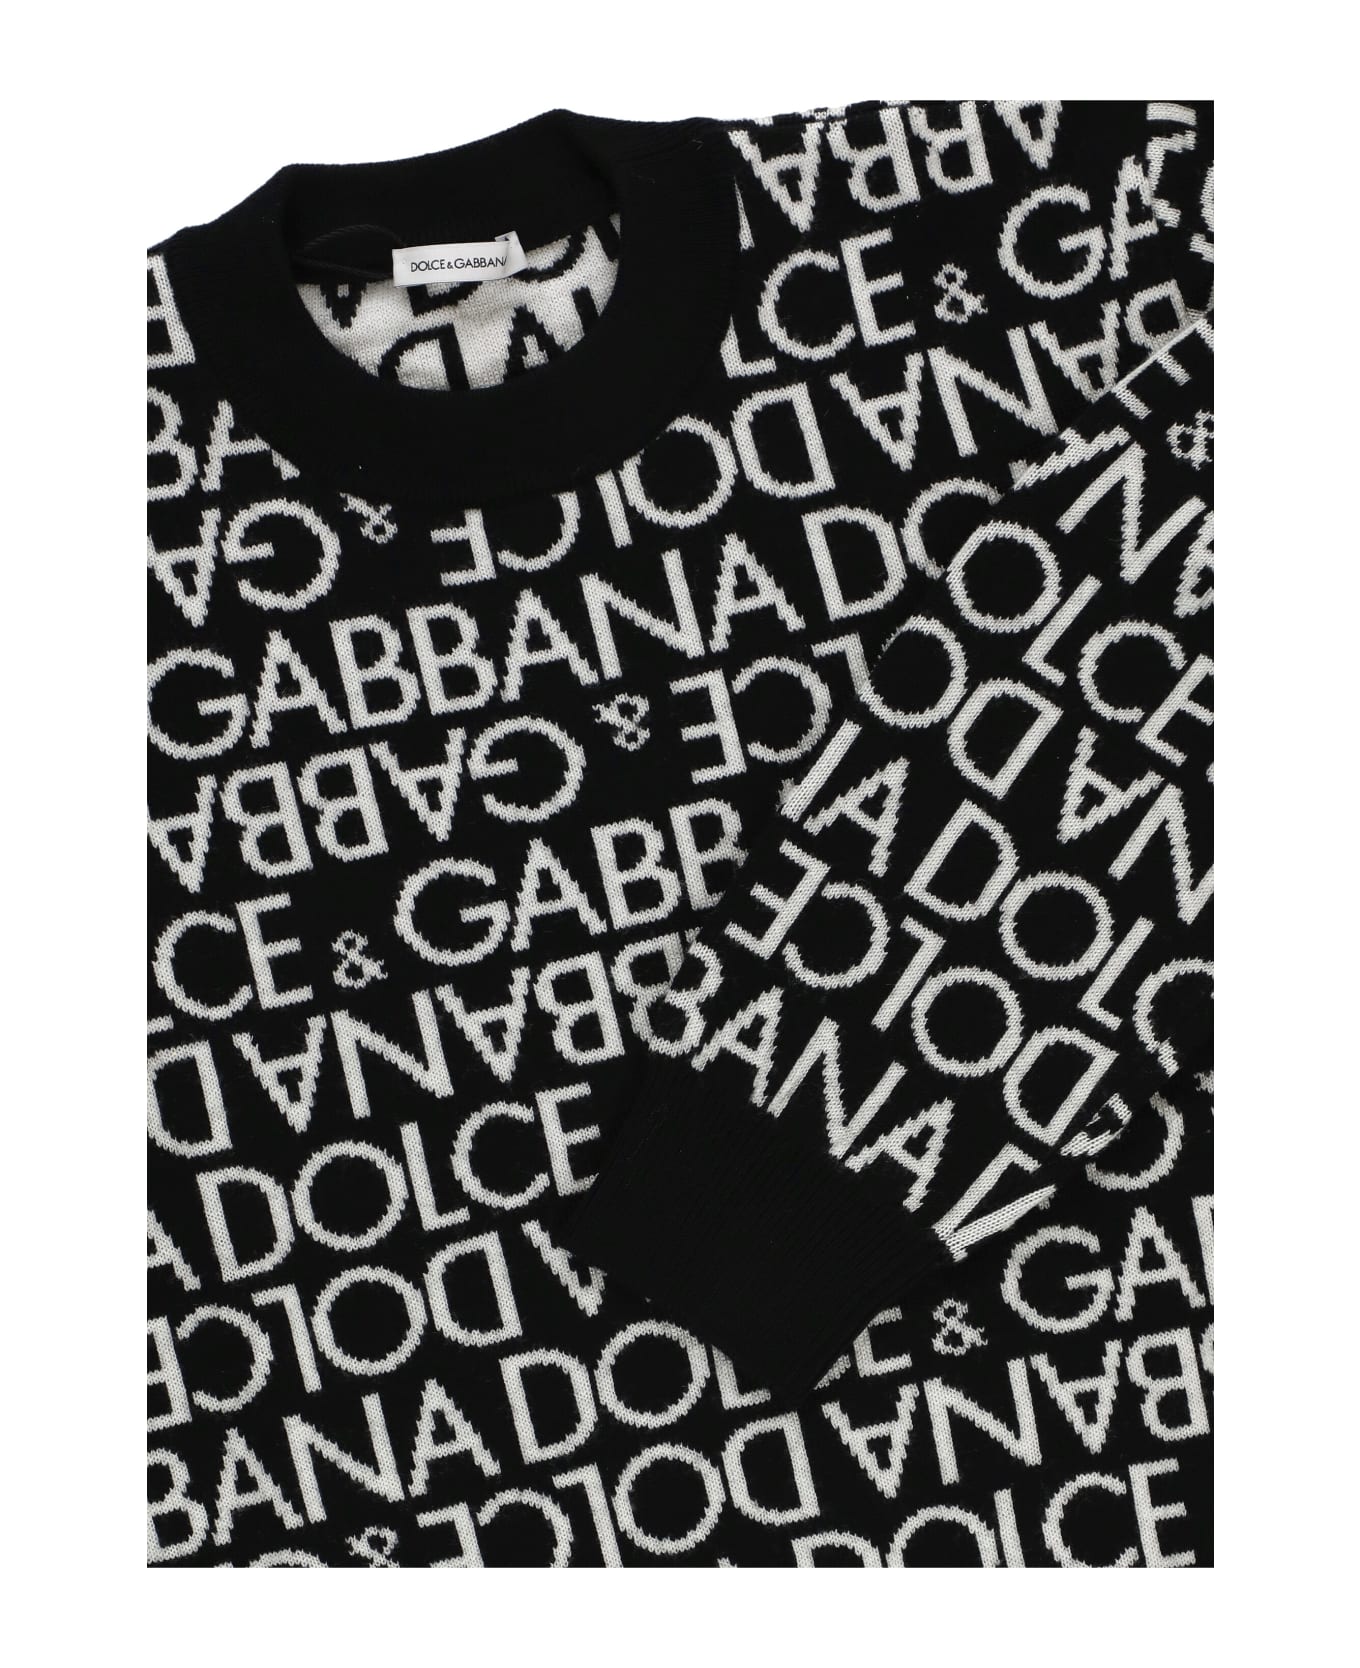 Dolce & Gabbana Sweater With Logo - Black ニットウェア＆スウェットシャツ